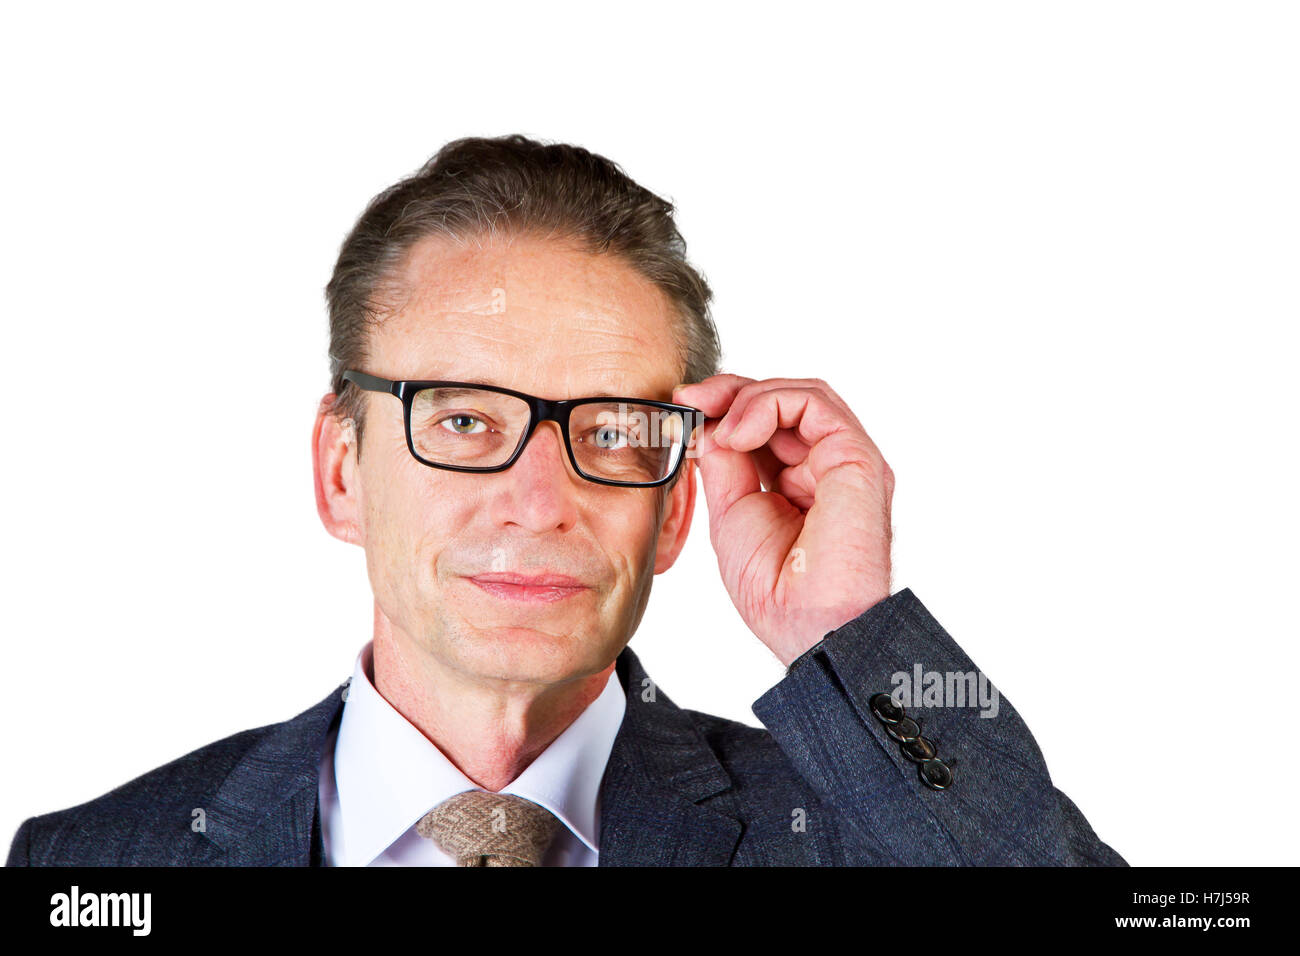 Uomo con gli occhiali - isolato su sfondo bianco Foto Stock